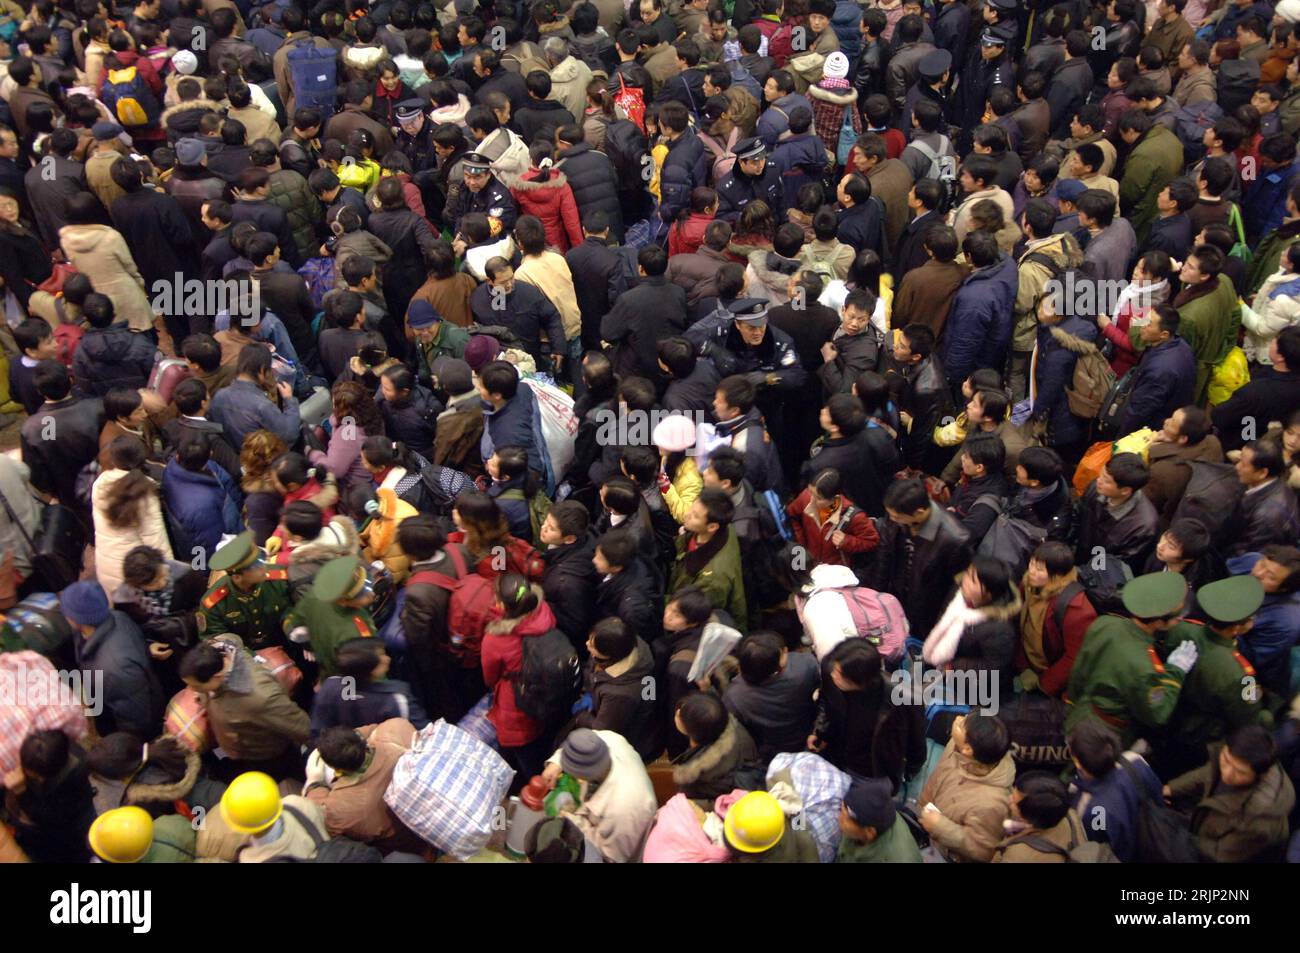 Bildnummer: 51067560  Datum: 19.01.2006  Copyright: imago/Xinhua Menschenmenge wartet nach einem Wintereinbruch und den daraus resultierenden Zugverspätungen auf die Abfahrt vor dem Westbahnhof in Peking - PUBLICATIONxNOTxINxCHN, Personen; 2006, Peking, Bahnhof, Bahnhöfe, Menge, Menschenmenge, Gedränge, Reisende, Fahrgäste, Andrang, Reisewelle, Massenandrang, Wartende, warten; , quer, Kbdig, Totale, Vogelperspektive, Perspektive, China,  , Bahn, Verkehr, Strukturen Stock Photo